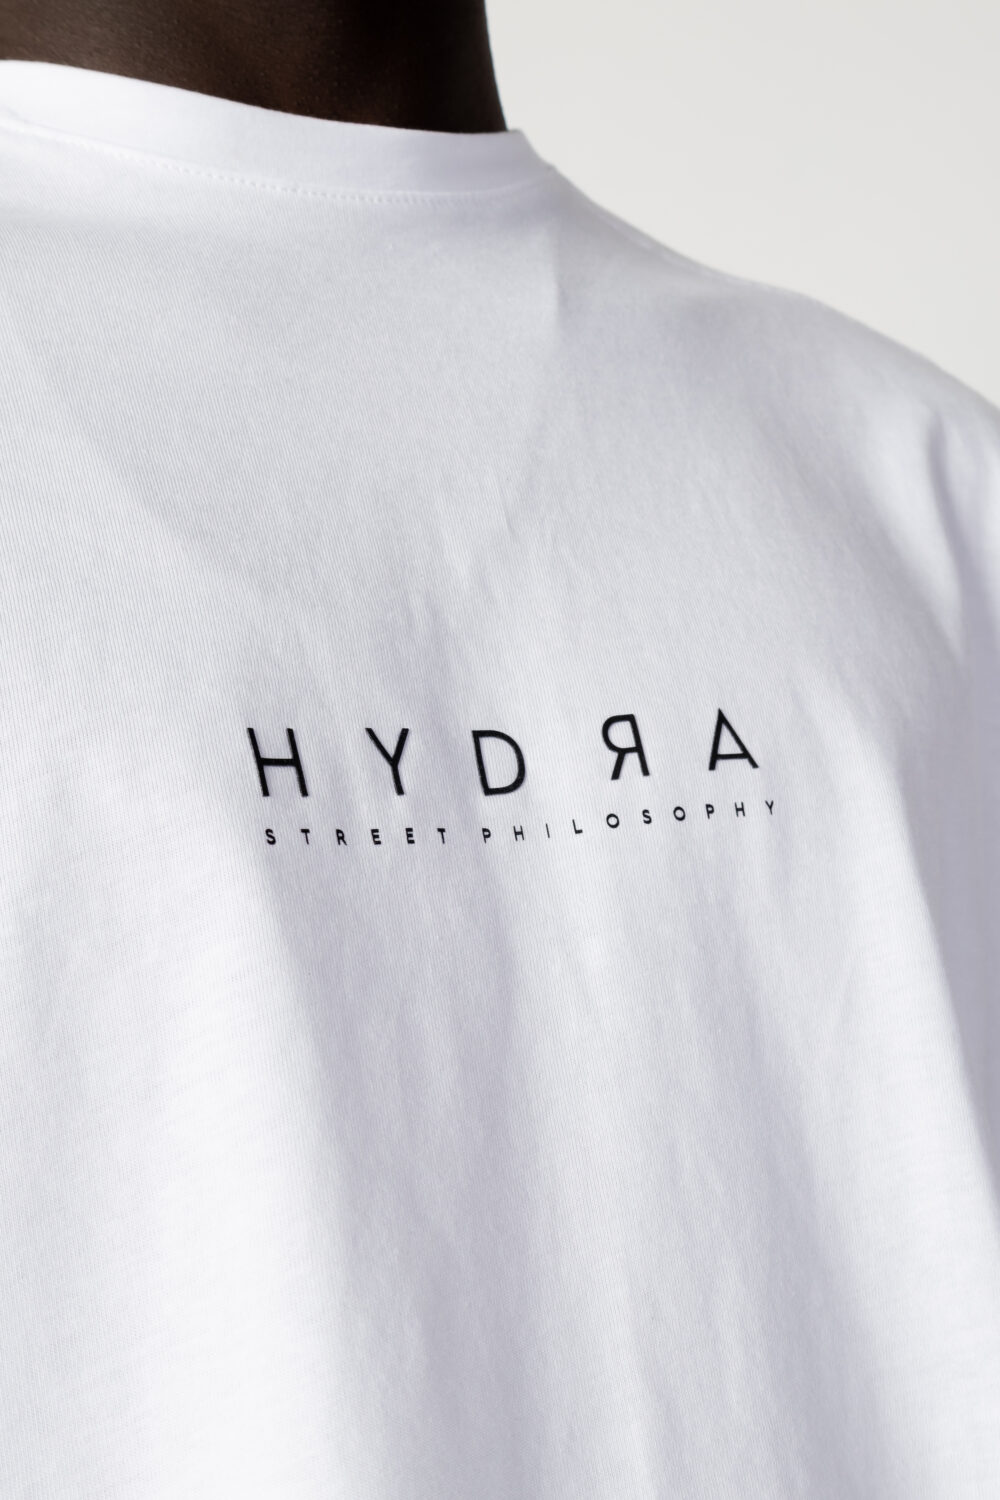 Completo corto tuta Hydra Clothing logo Bianco - Foto 4